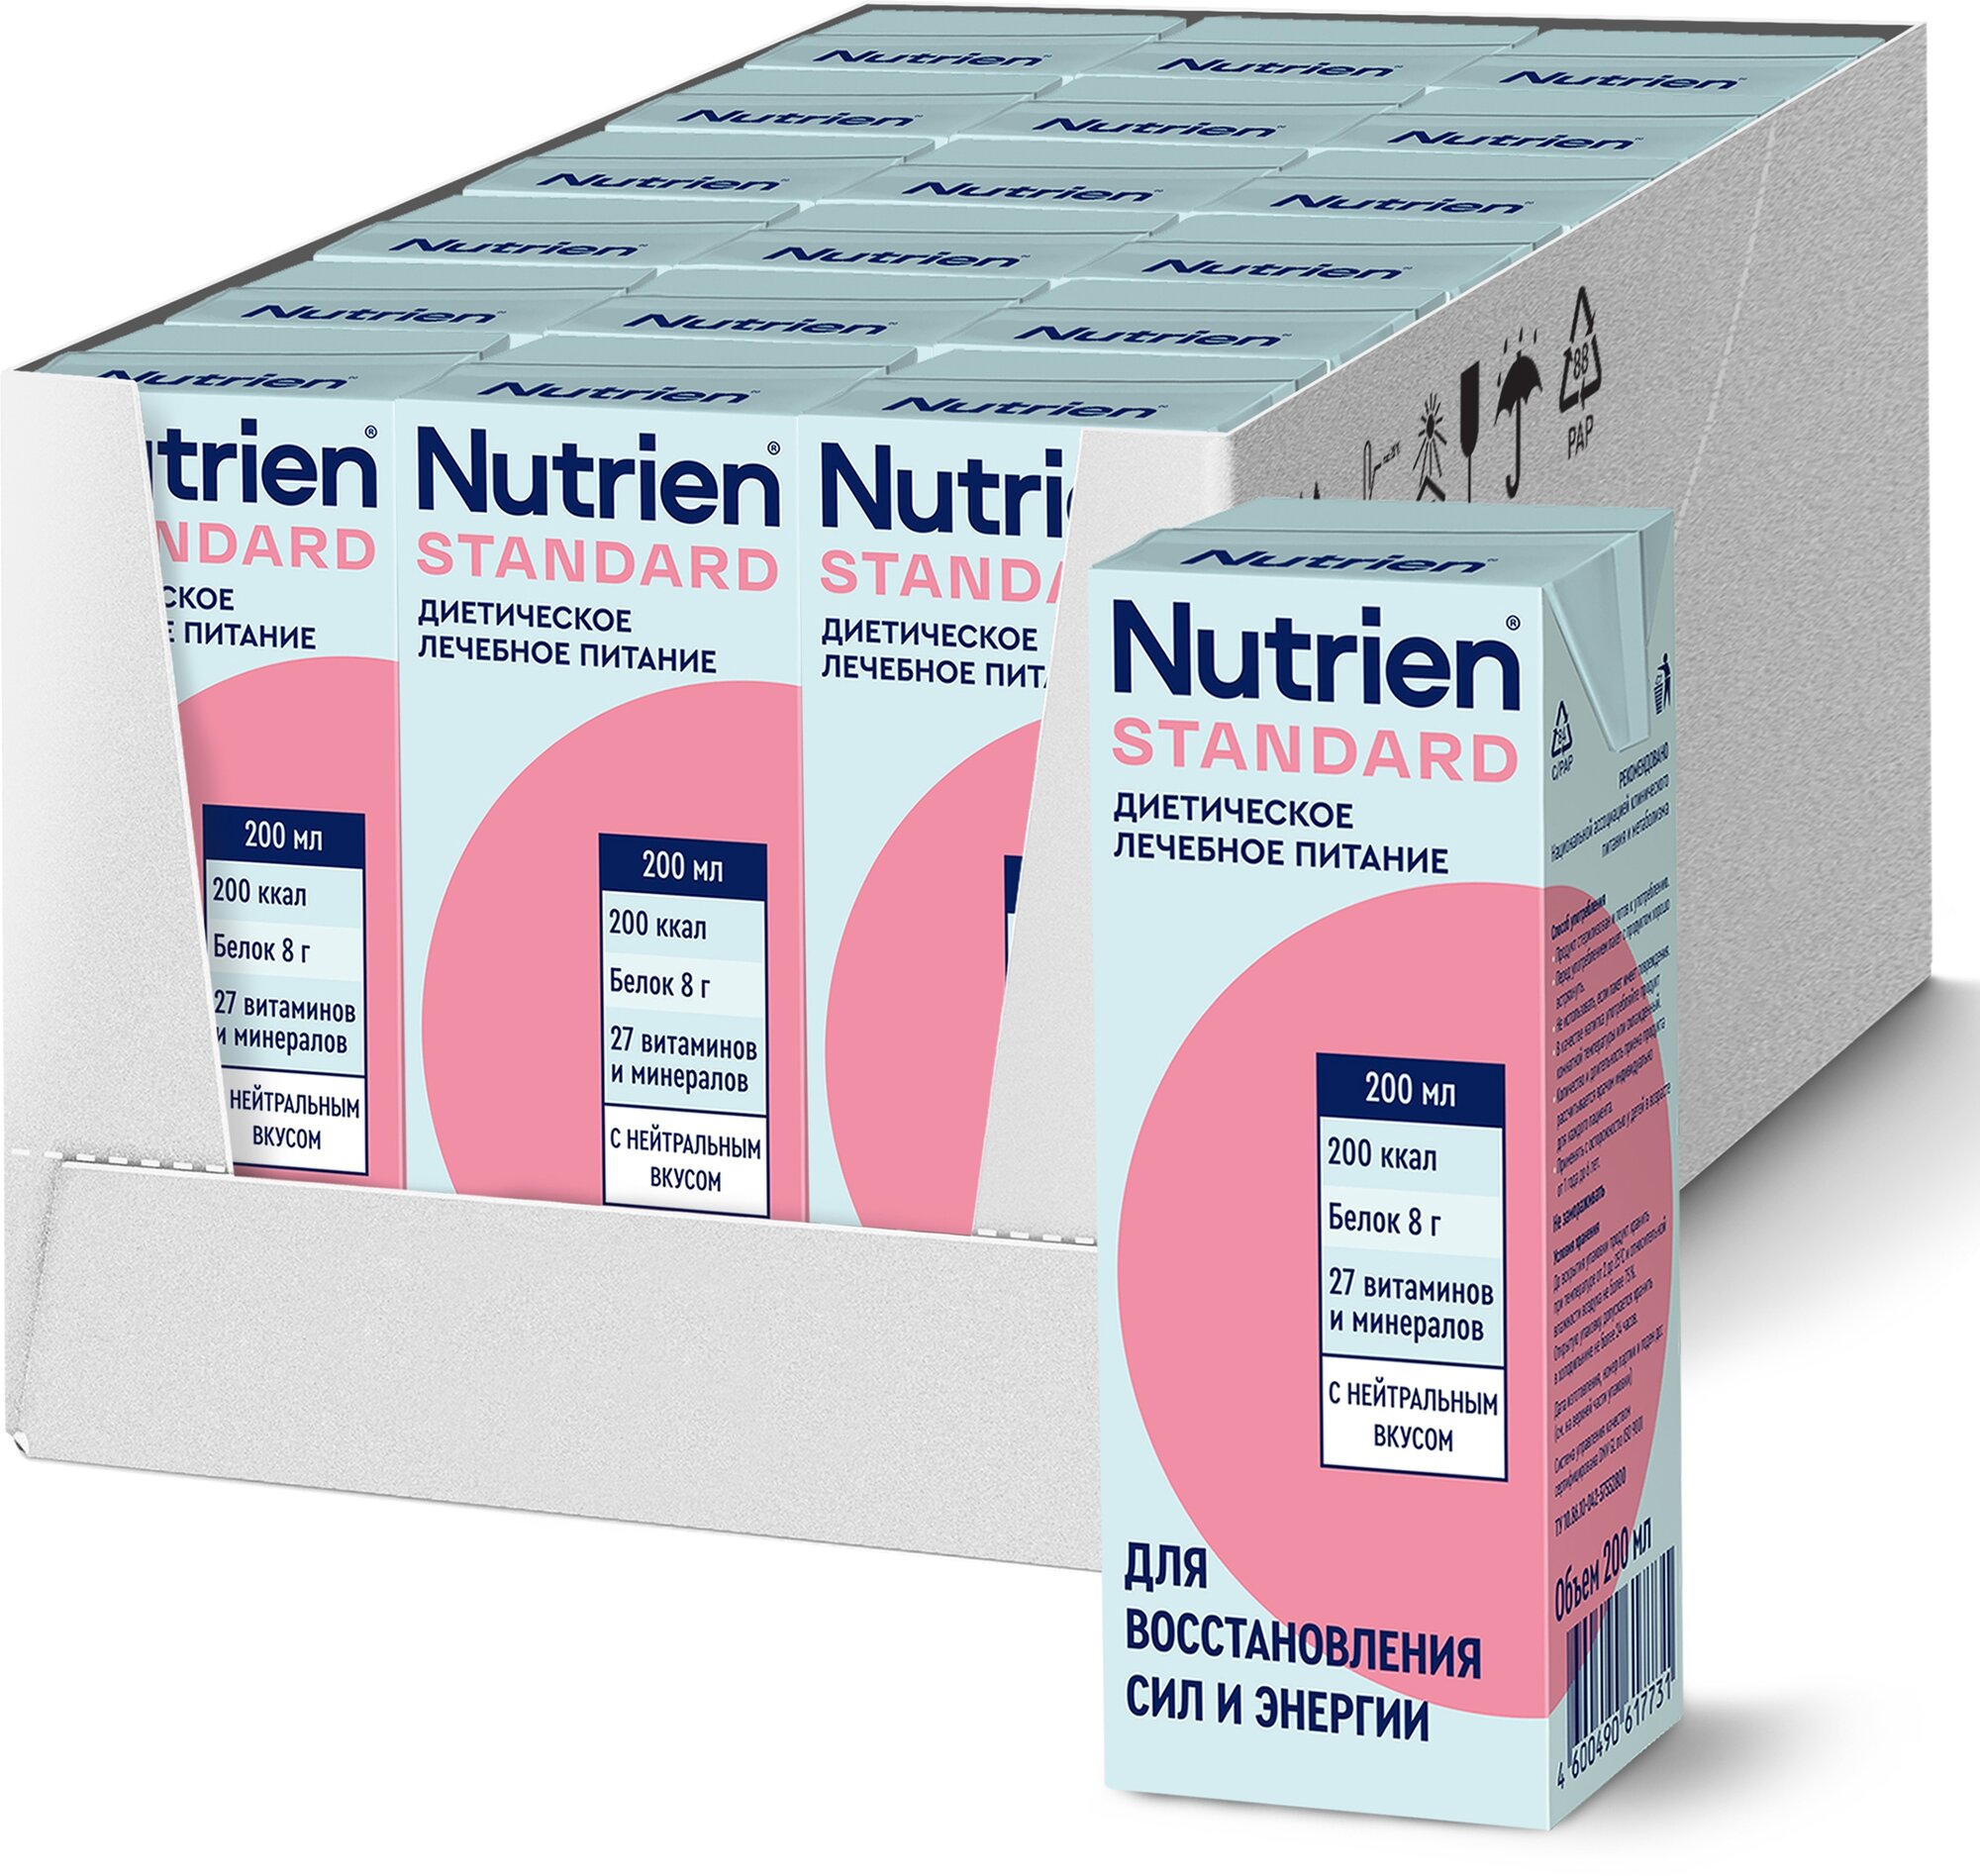 Nutrien Standard 200 мл с нейтральным вкусом готовое к употреблению жидкое энтеральное питание (для зондового и перорального использования), 18 шт